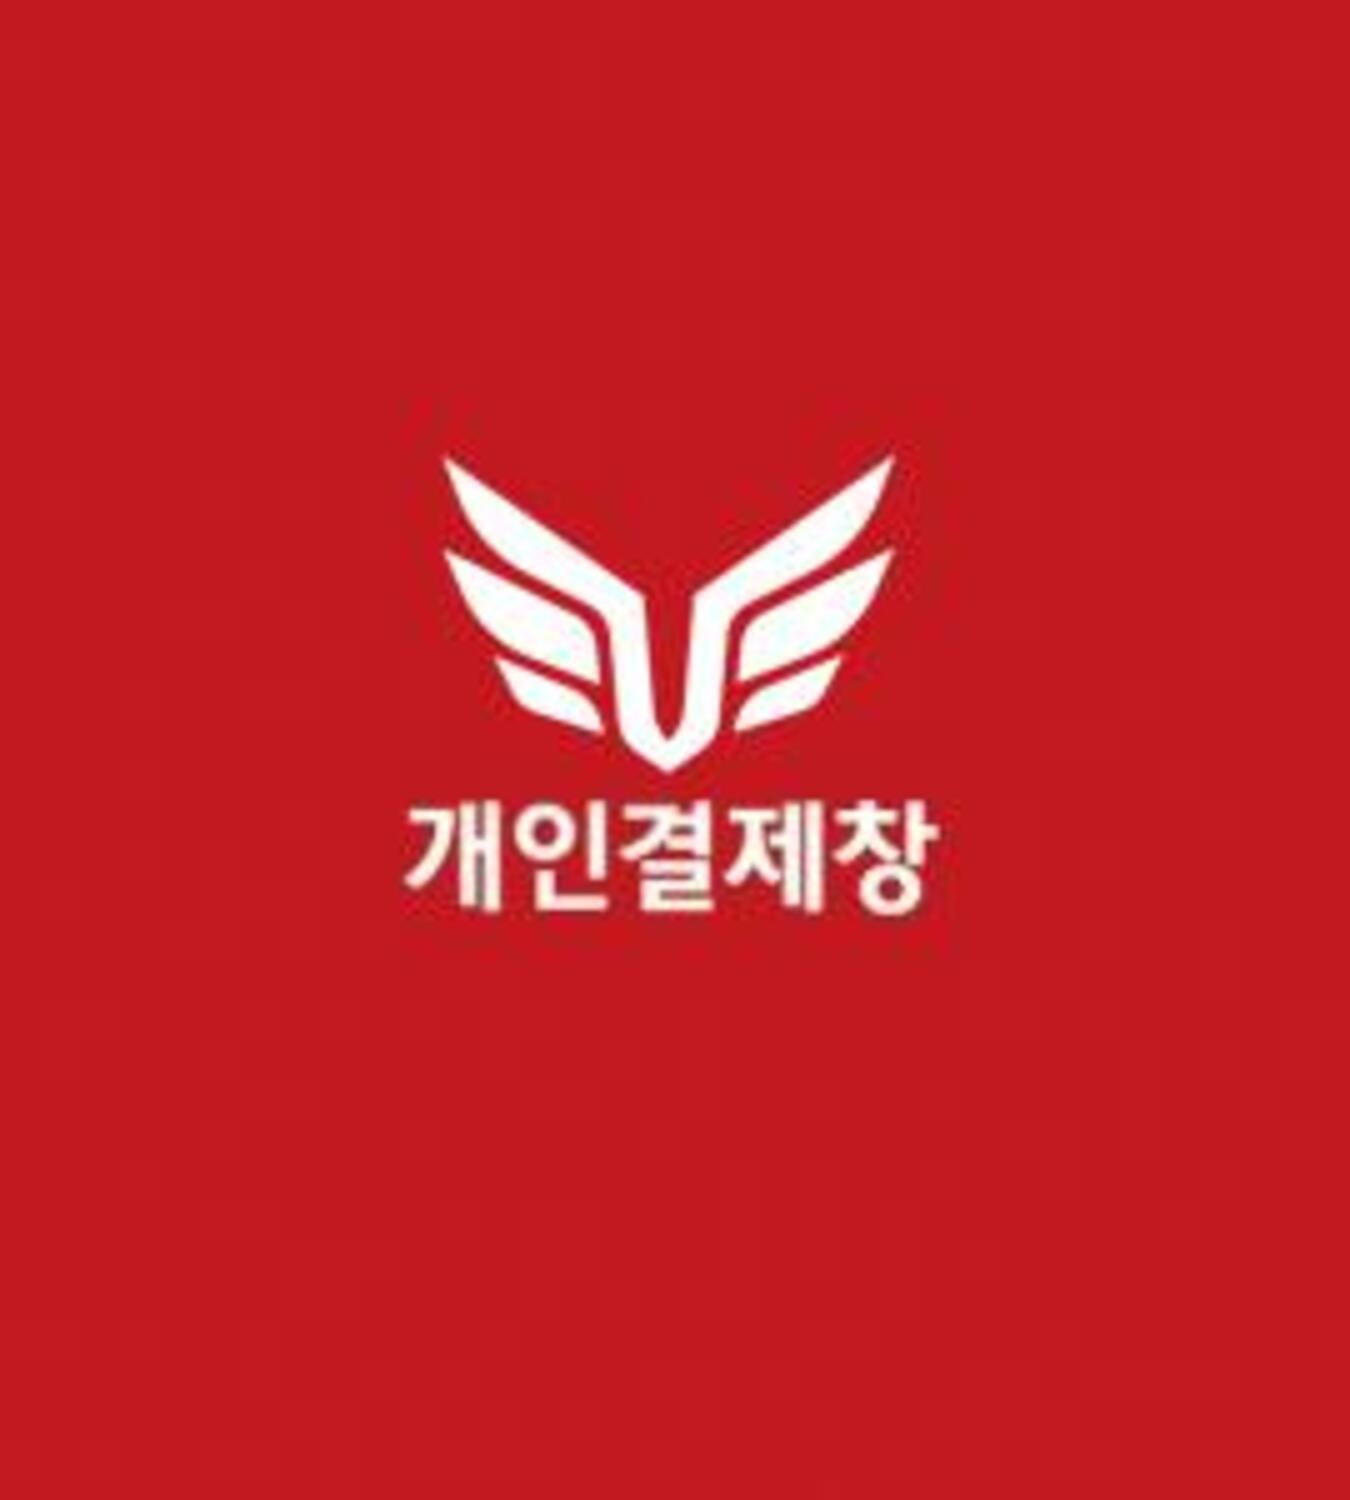 ★갑룡초등학교 고객님 개인결제창★